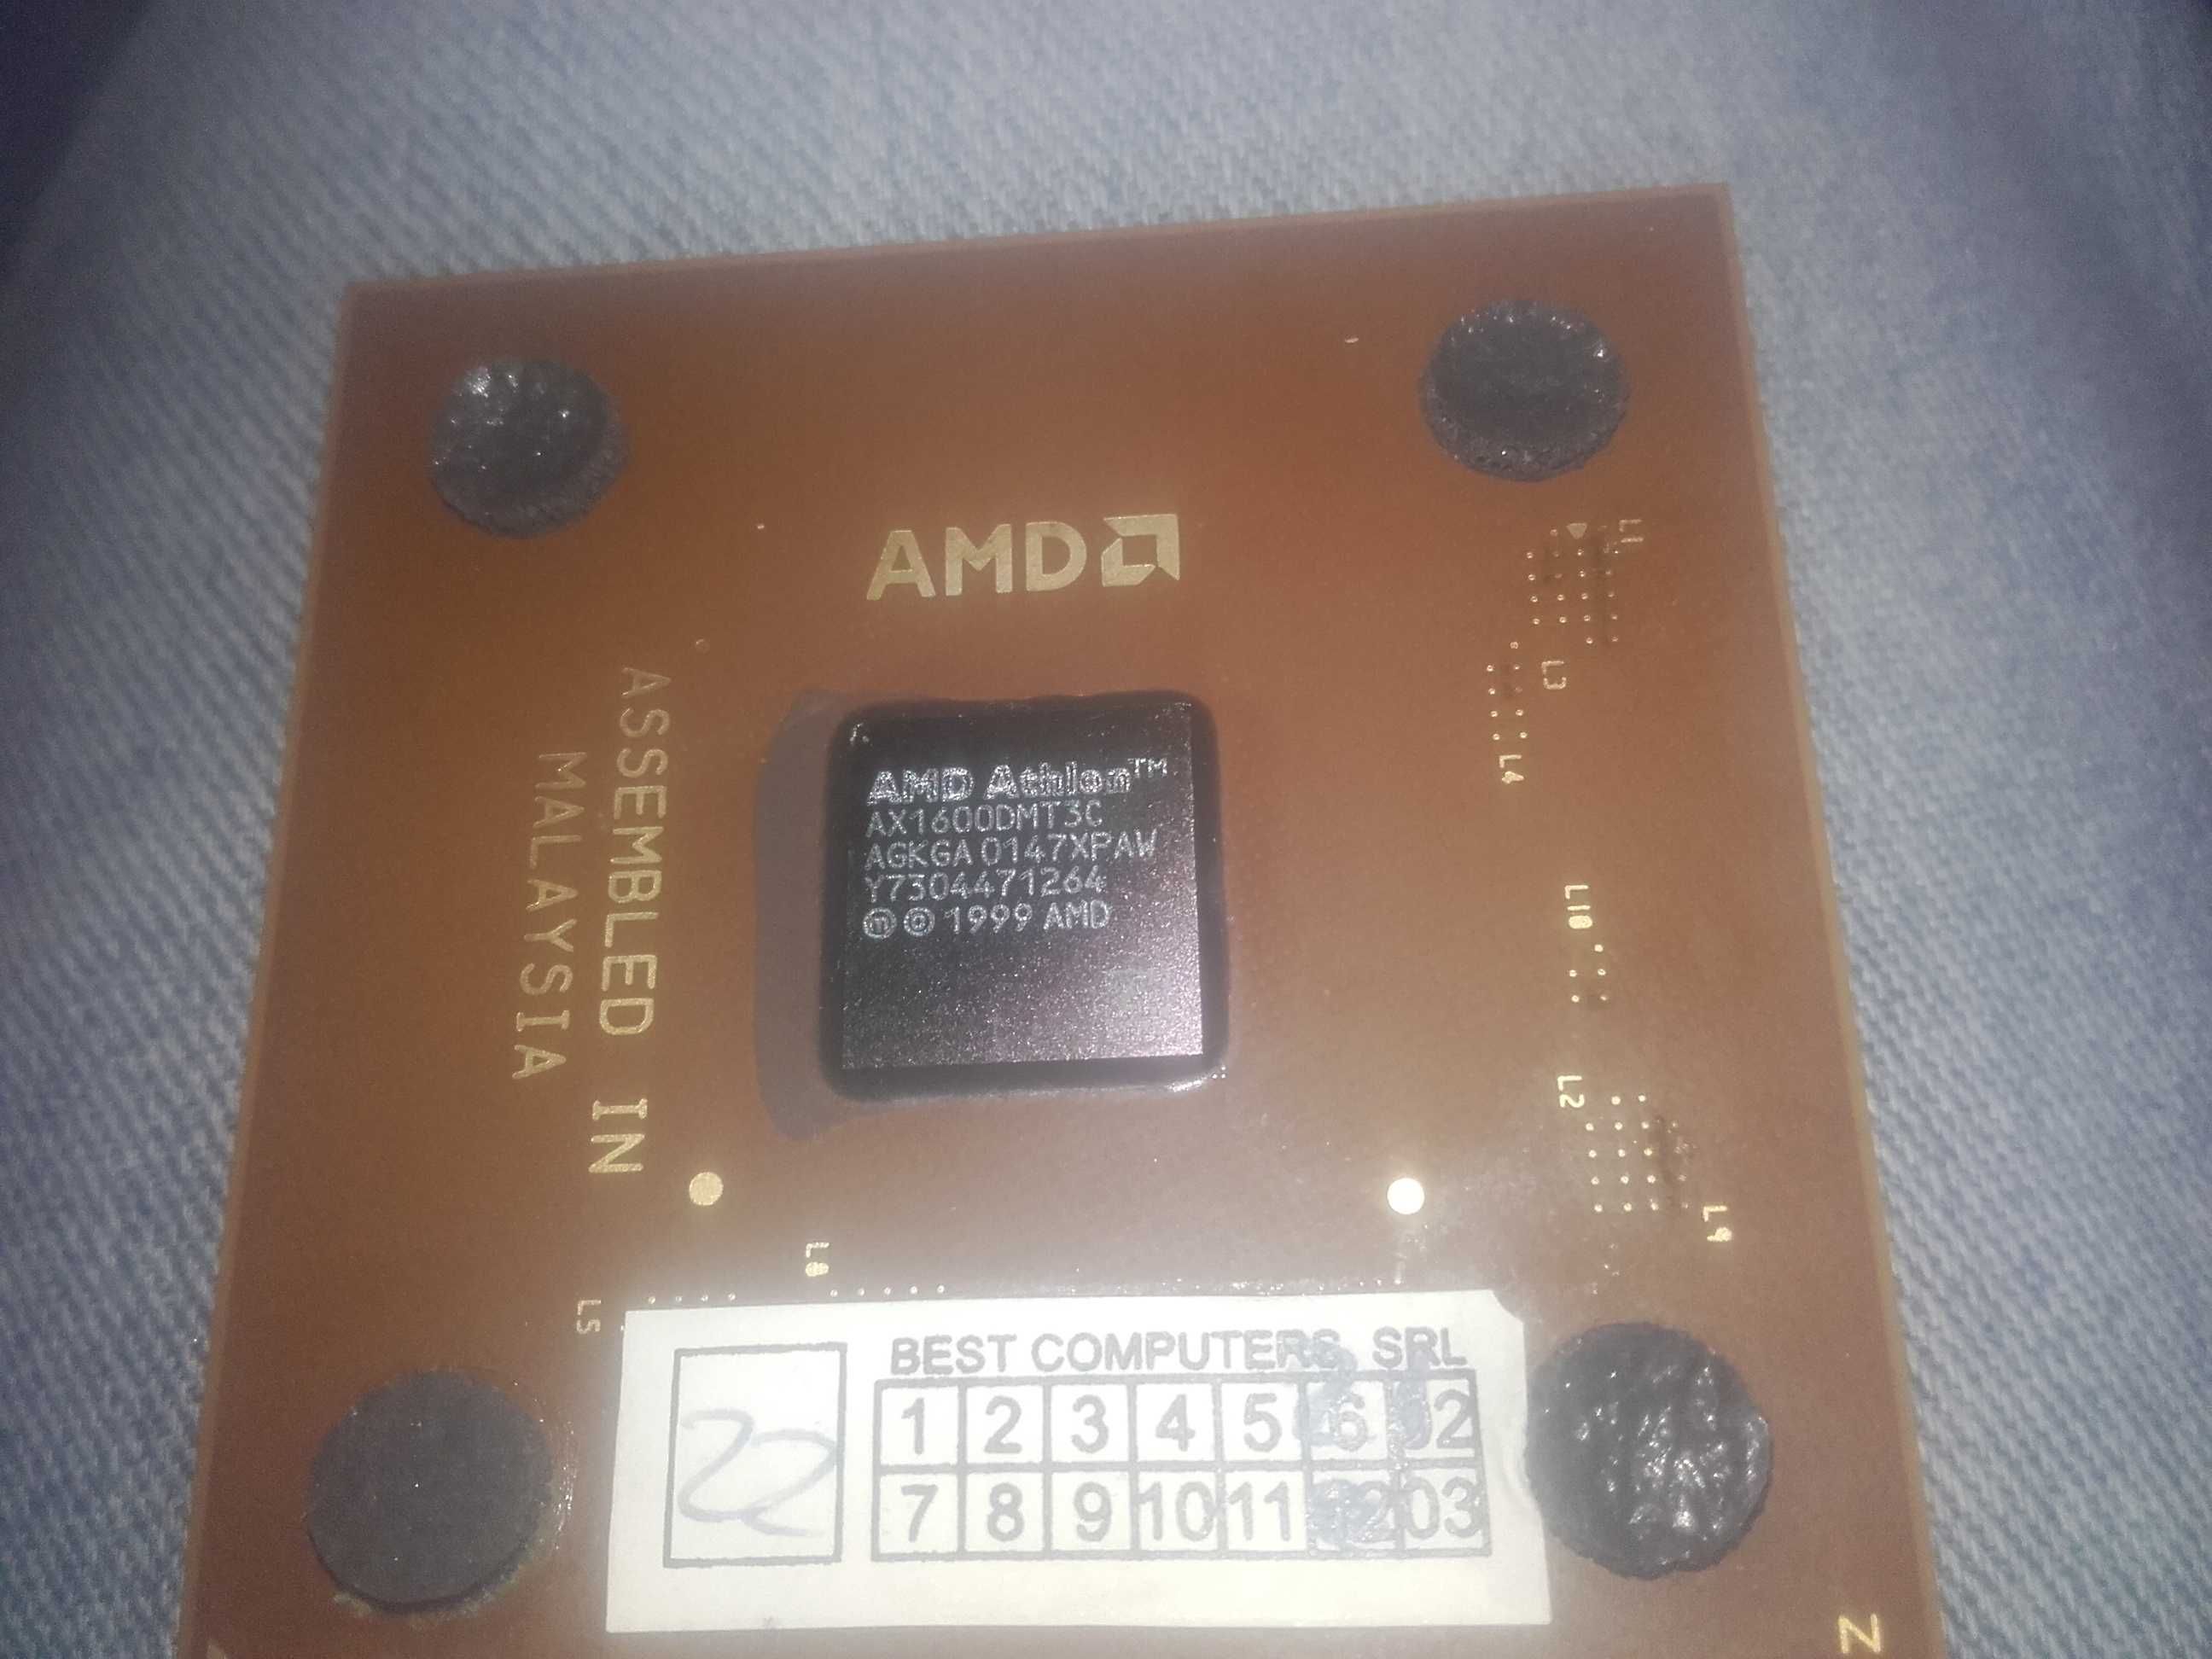 Procesor ceramic 1.6Ghz AMD Athlon (AX1600DMT3C) socket A 462